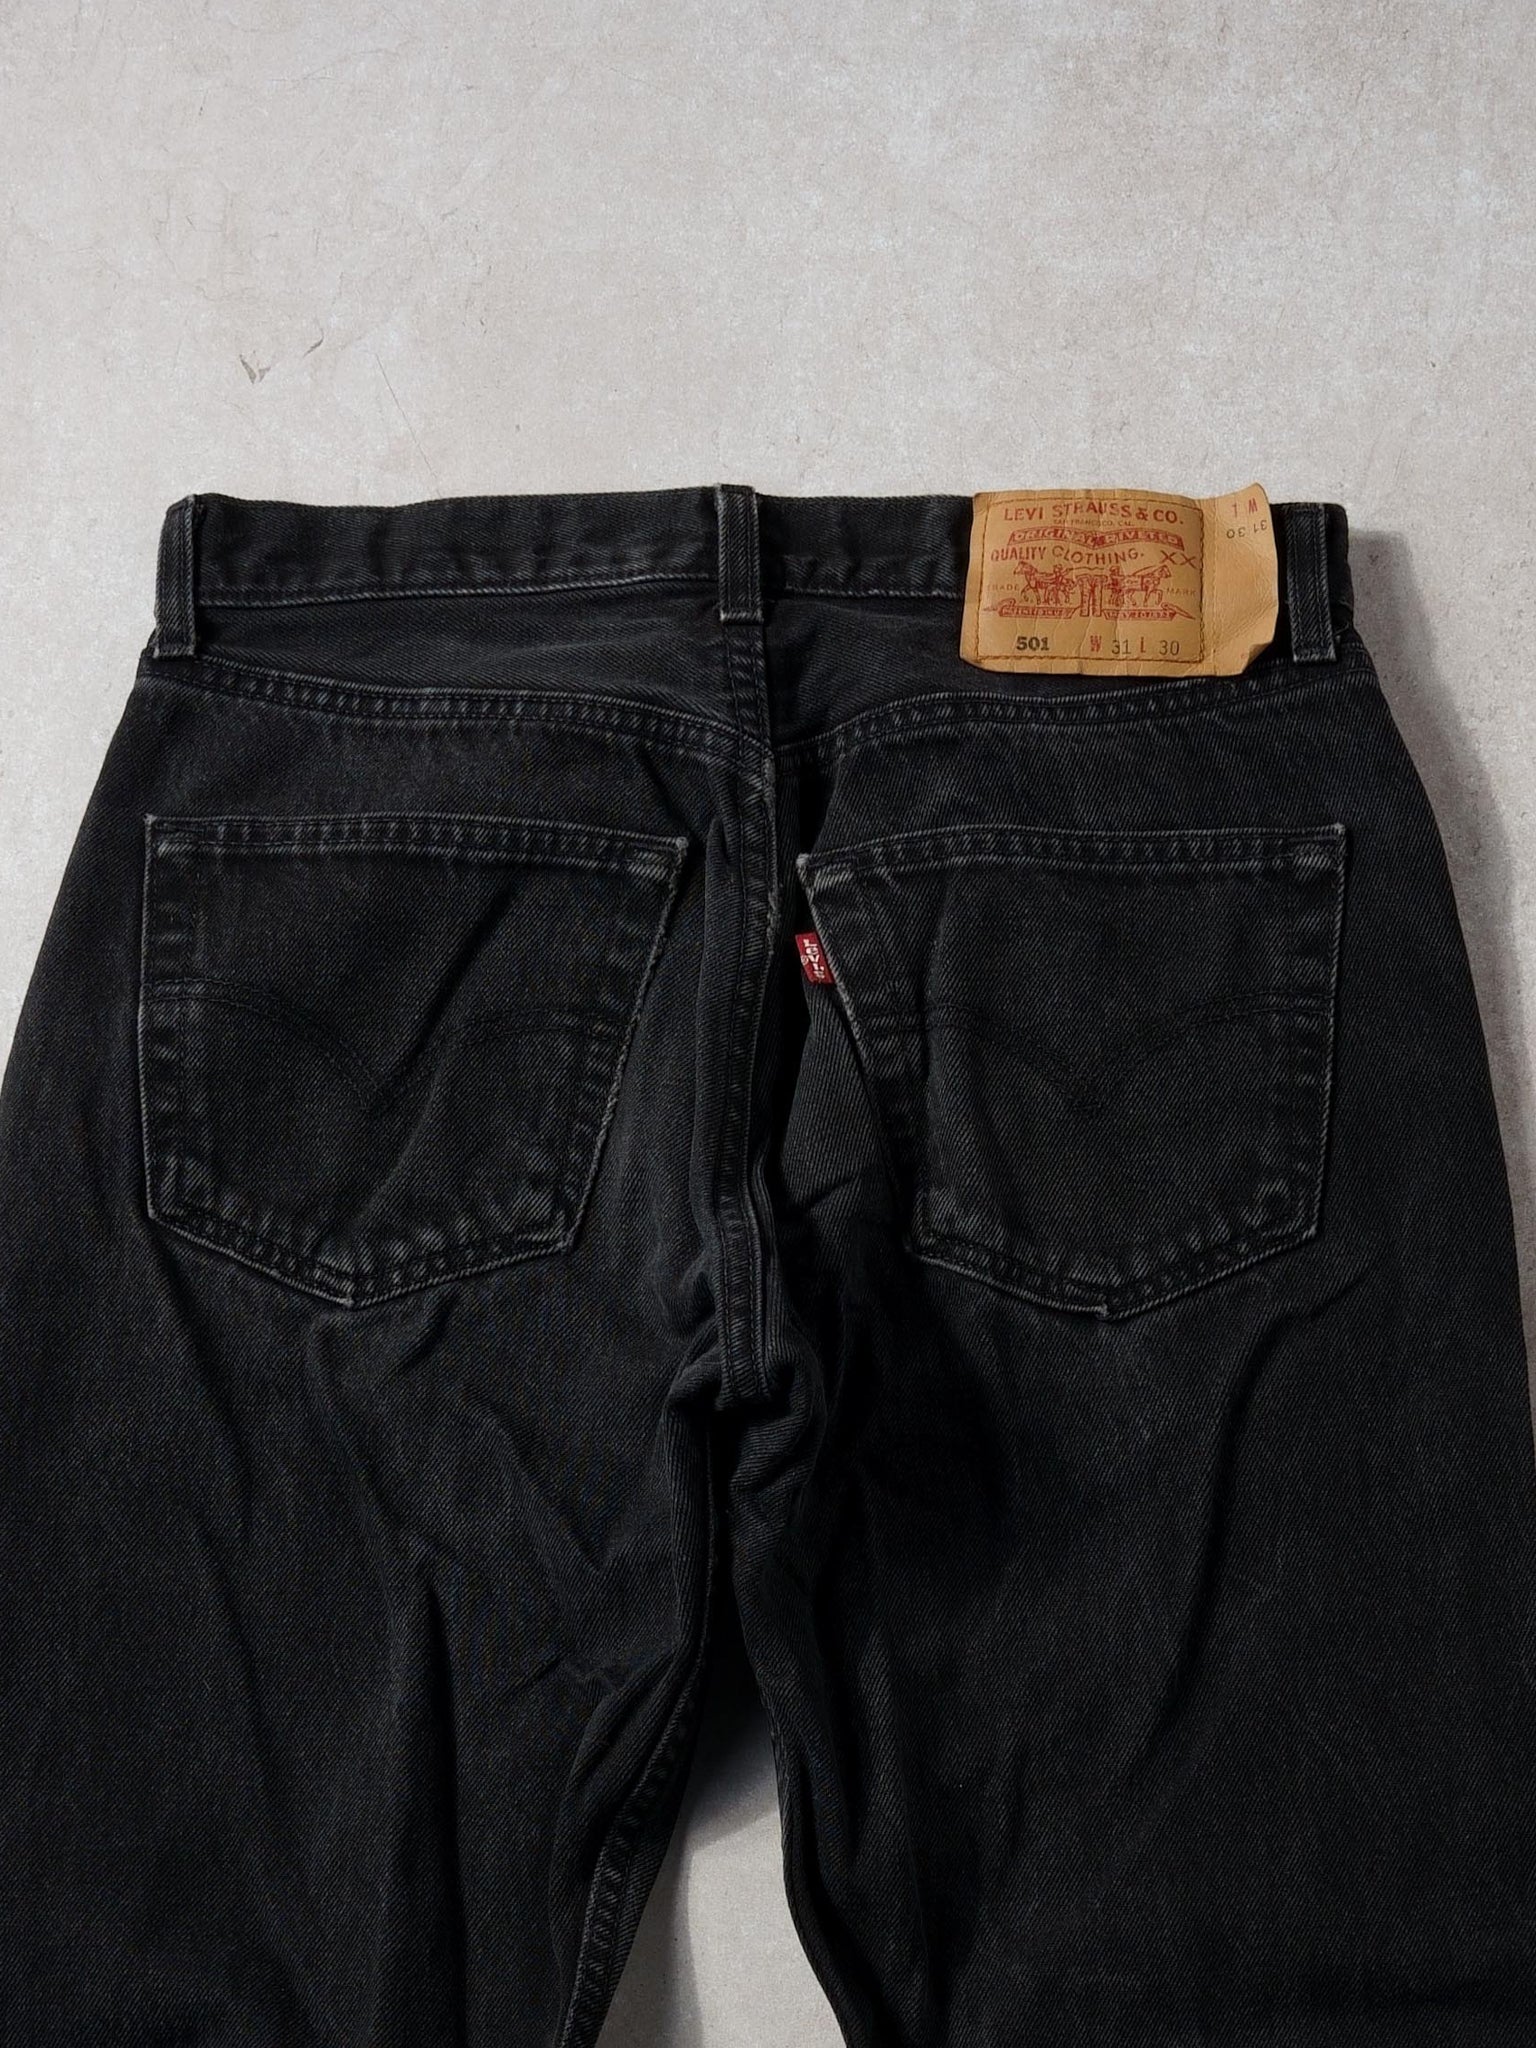 Vintage 90s Black Levi's 501 Denim Jeans (30x30)